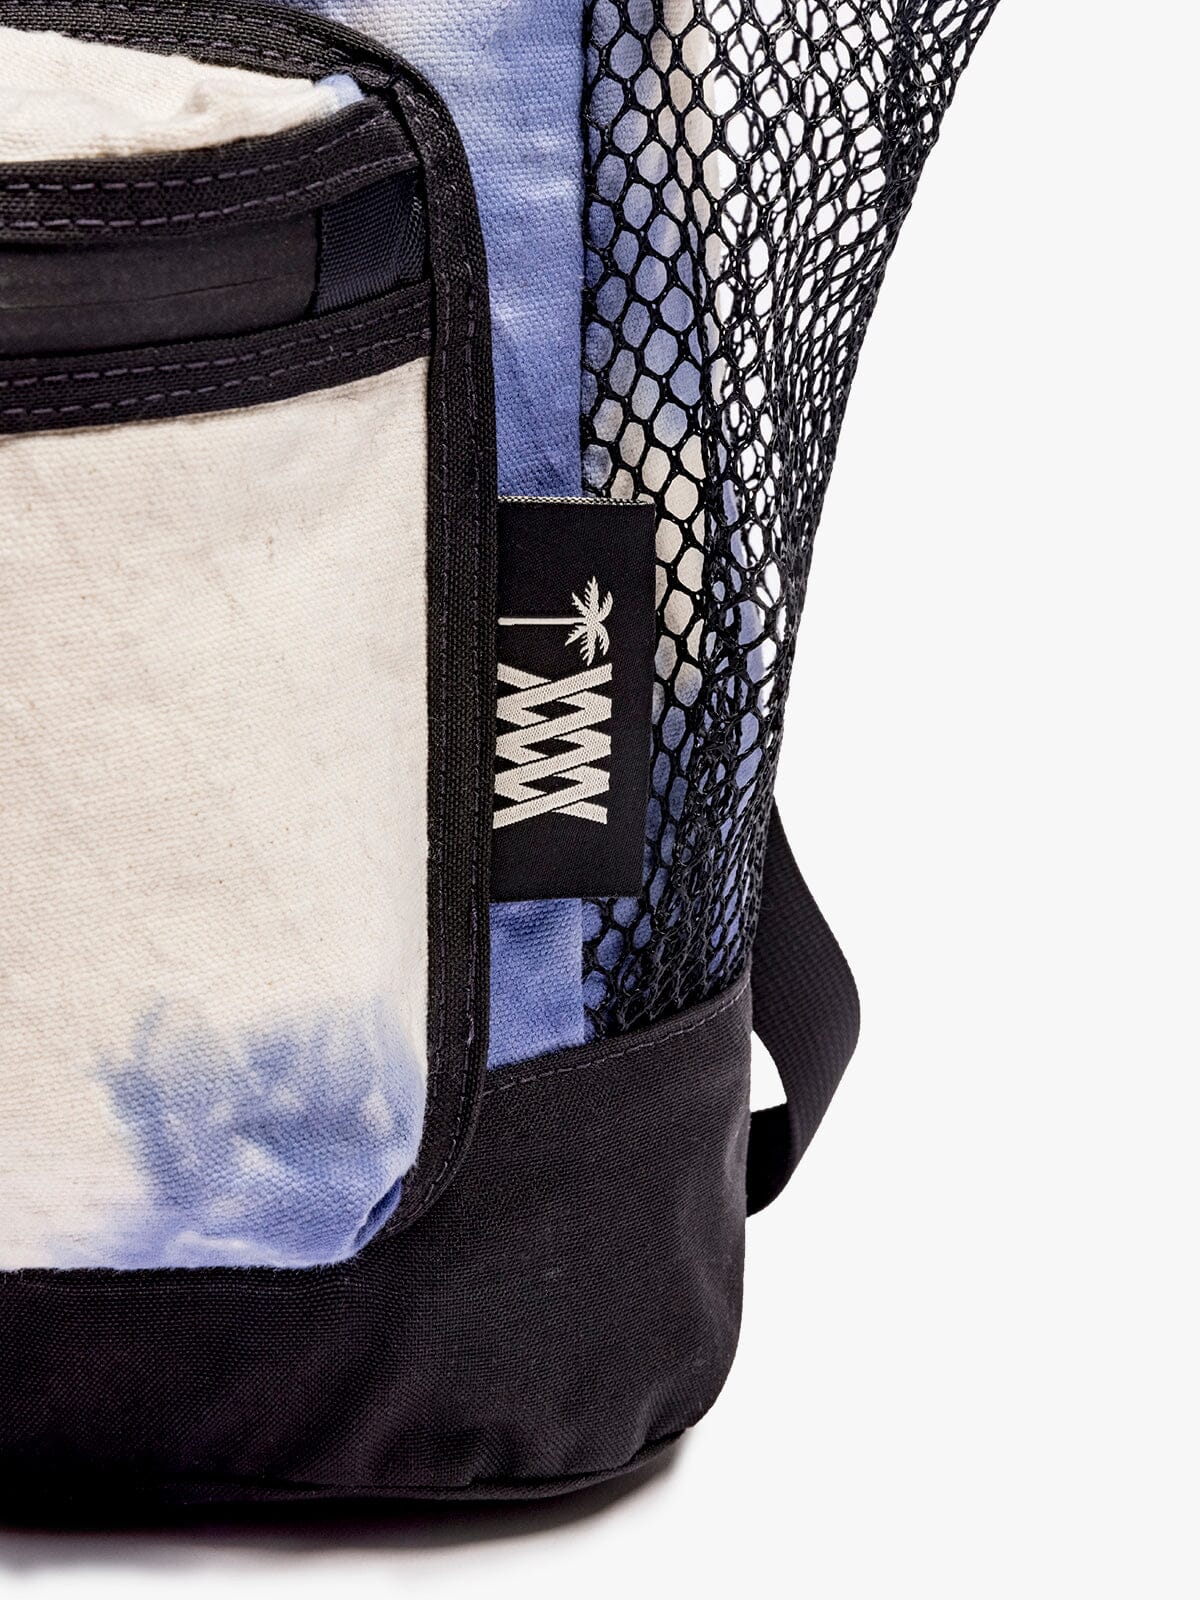 MW x ASP Stratus Ruck by Mission Workshop - Säänkestävät laukut ja tekniset vaatteet - San Francisco & Los Angeles - Kestävästi rakennettu - ikuinen takuu